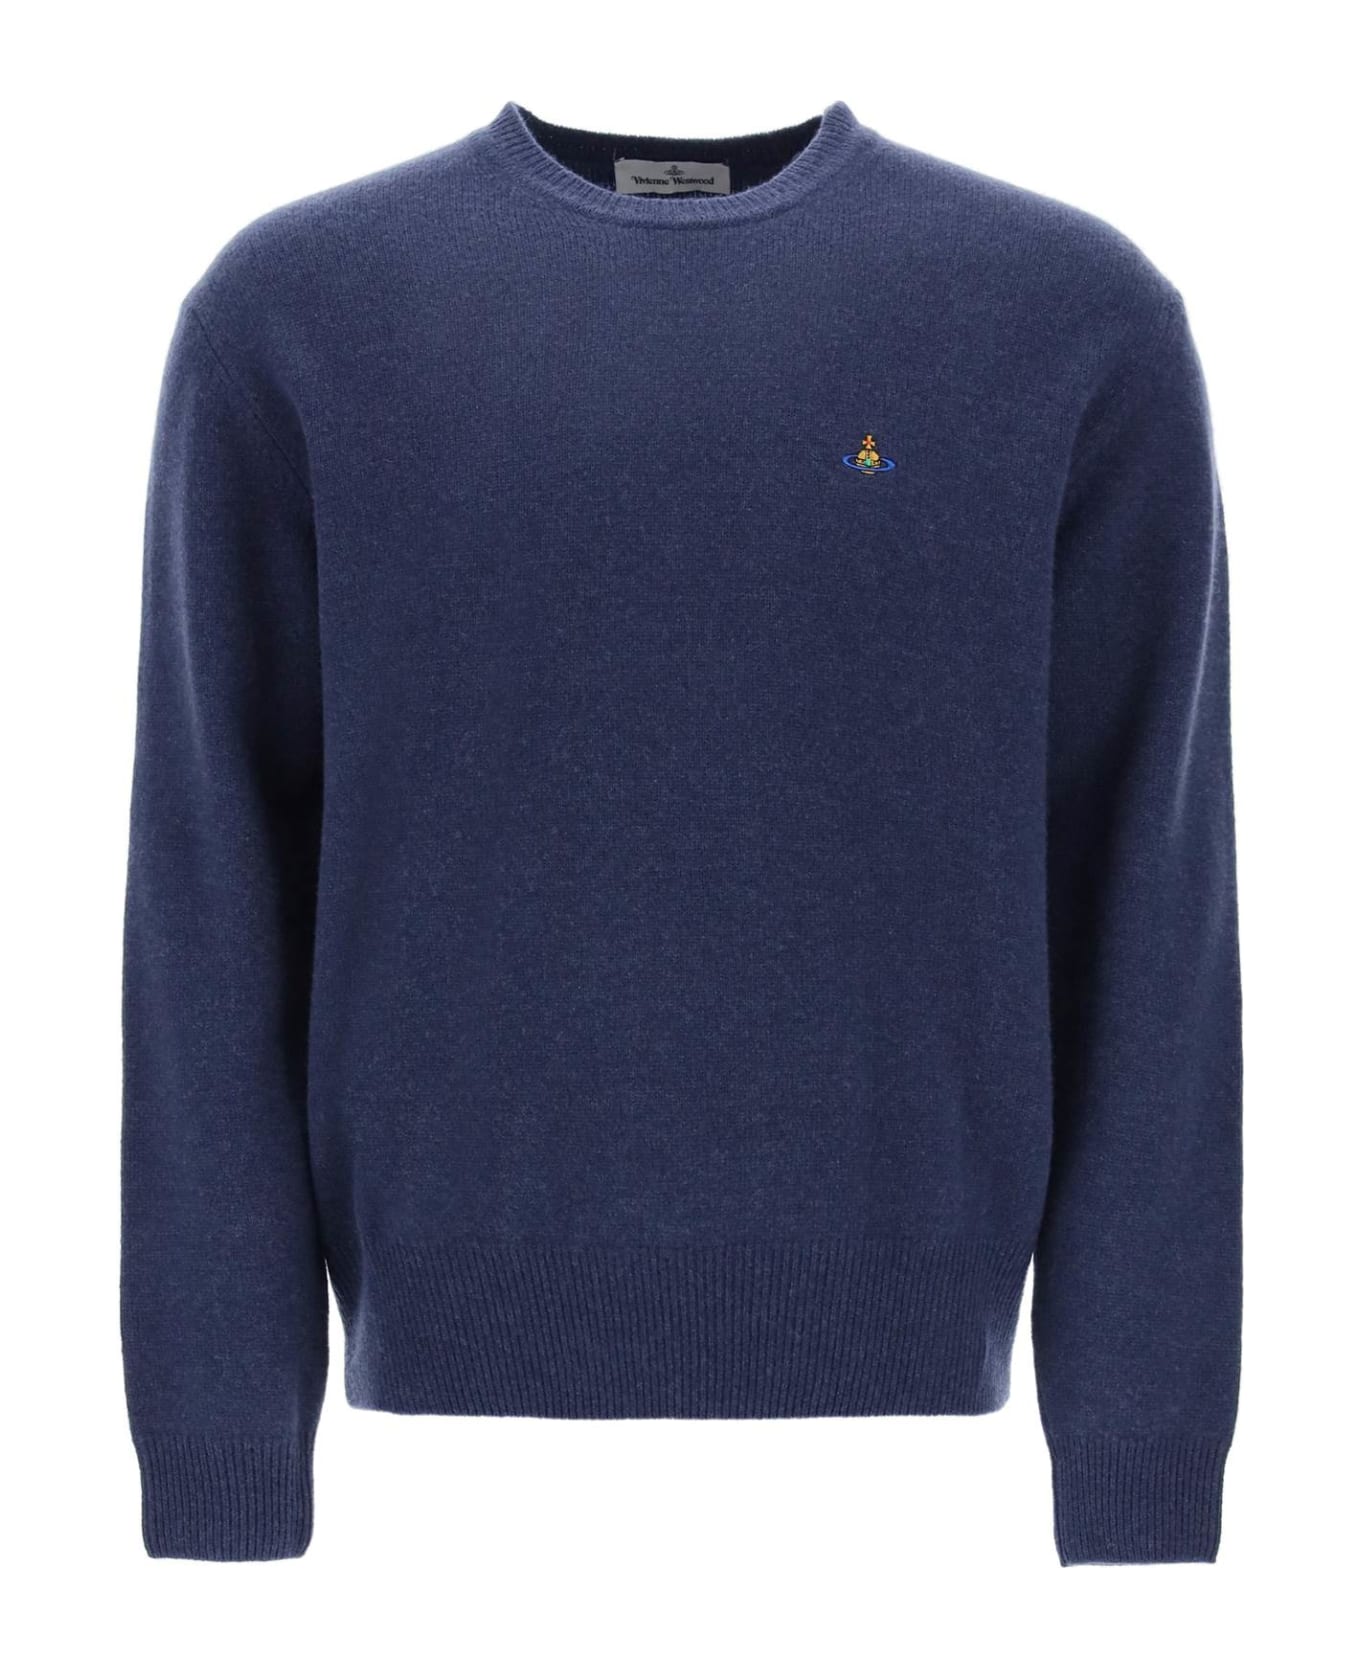 Vivienne Westwood Alex Merino Wool Sweater - DENIM (Blue)